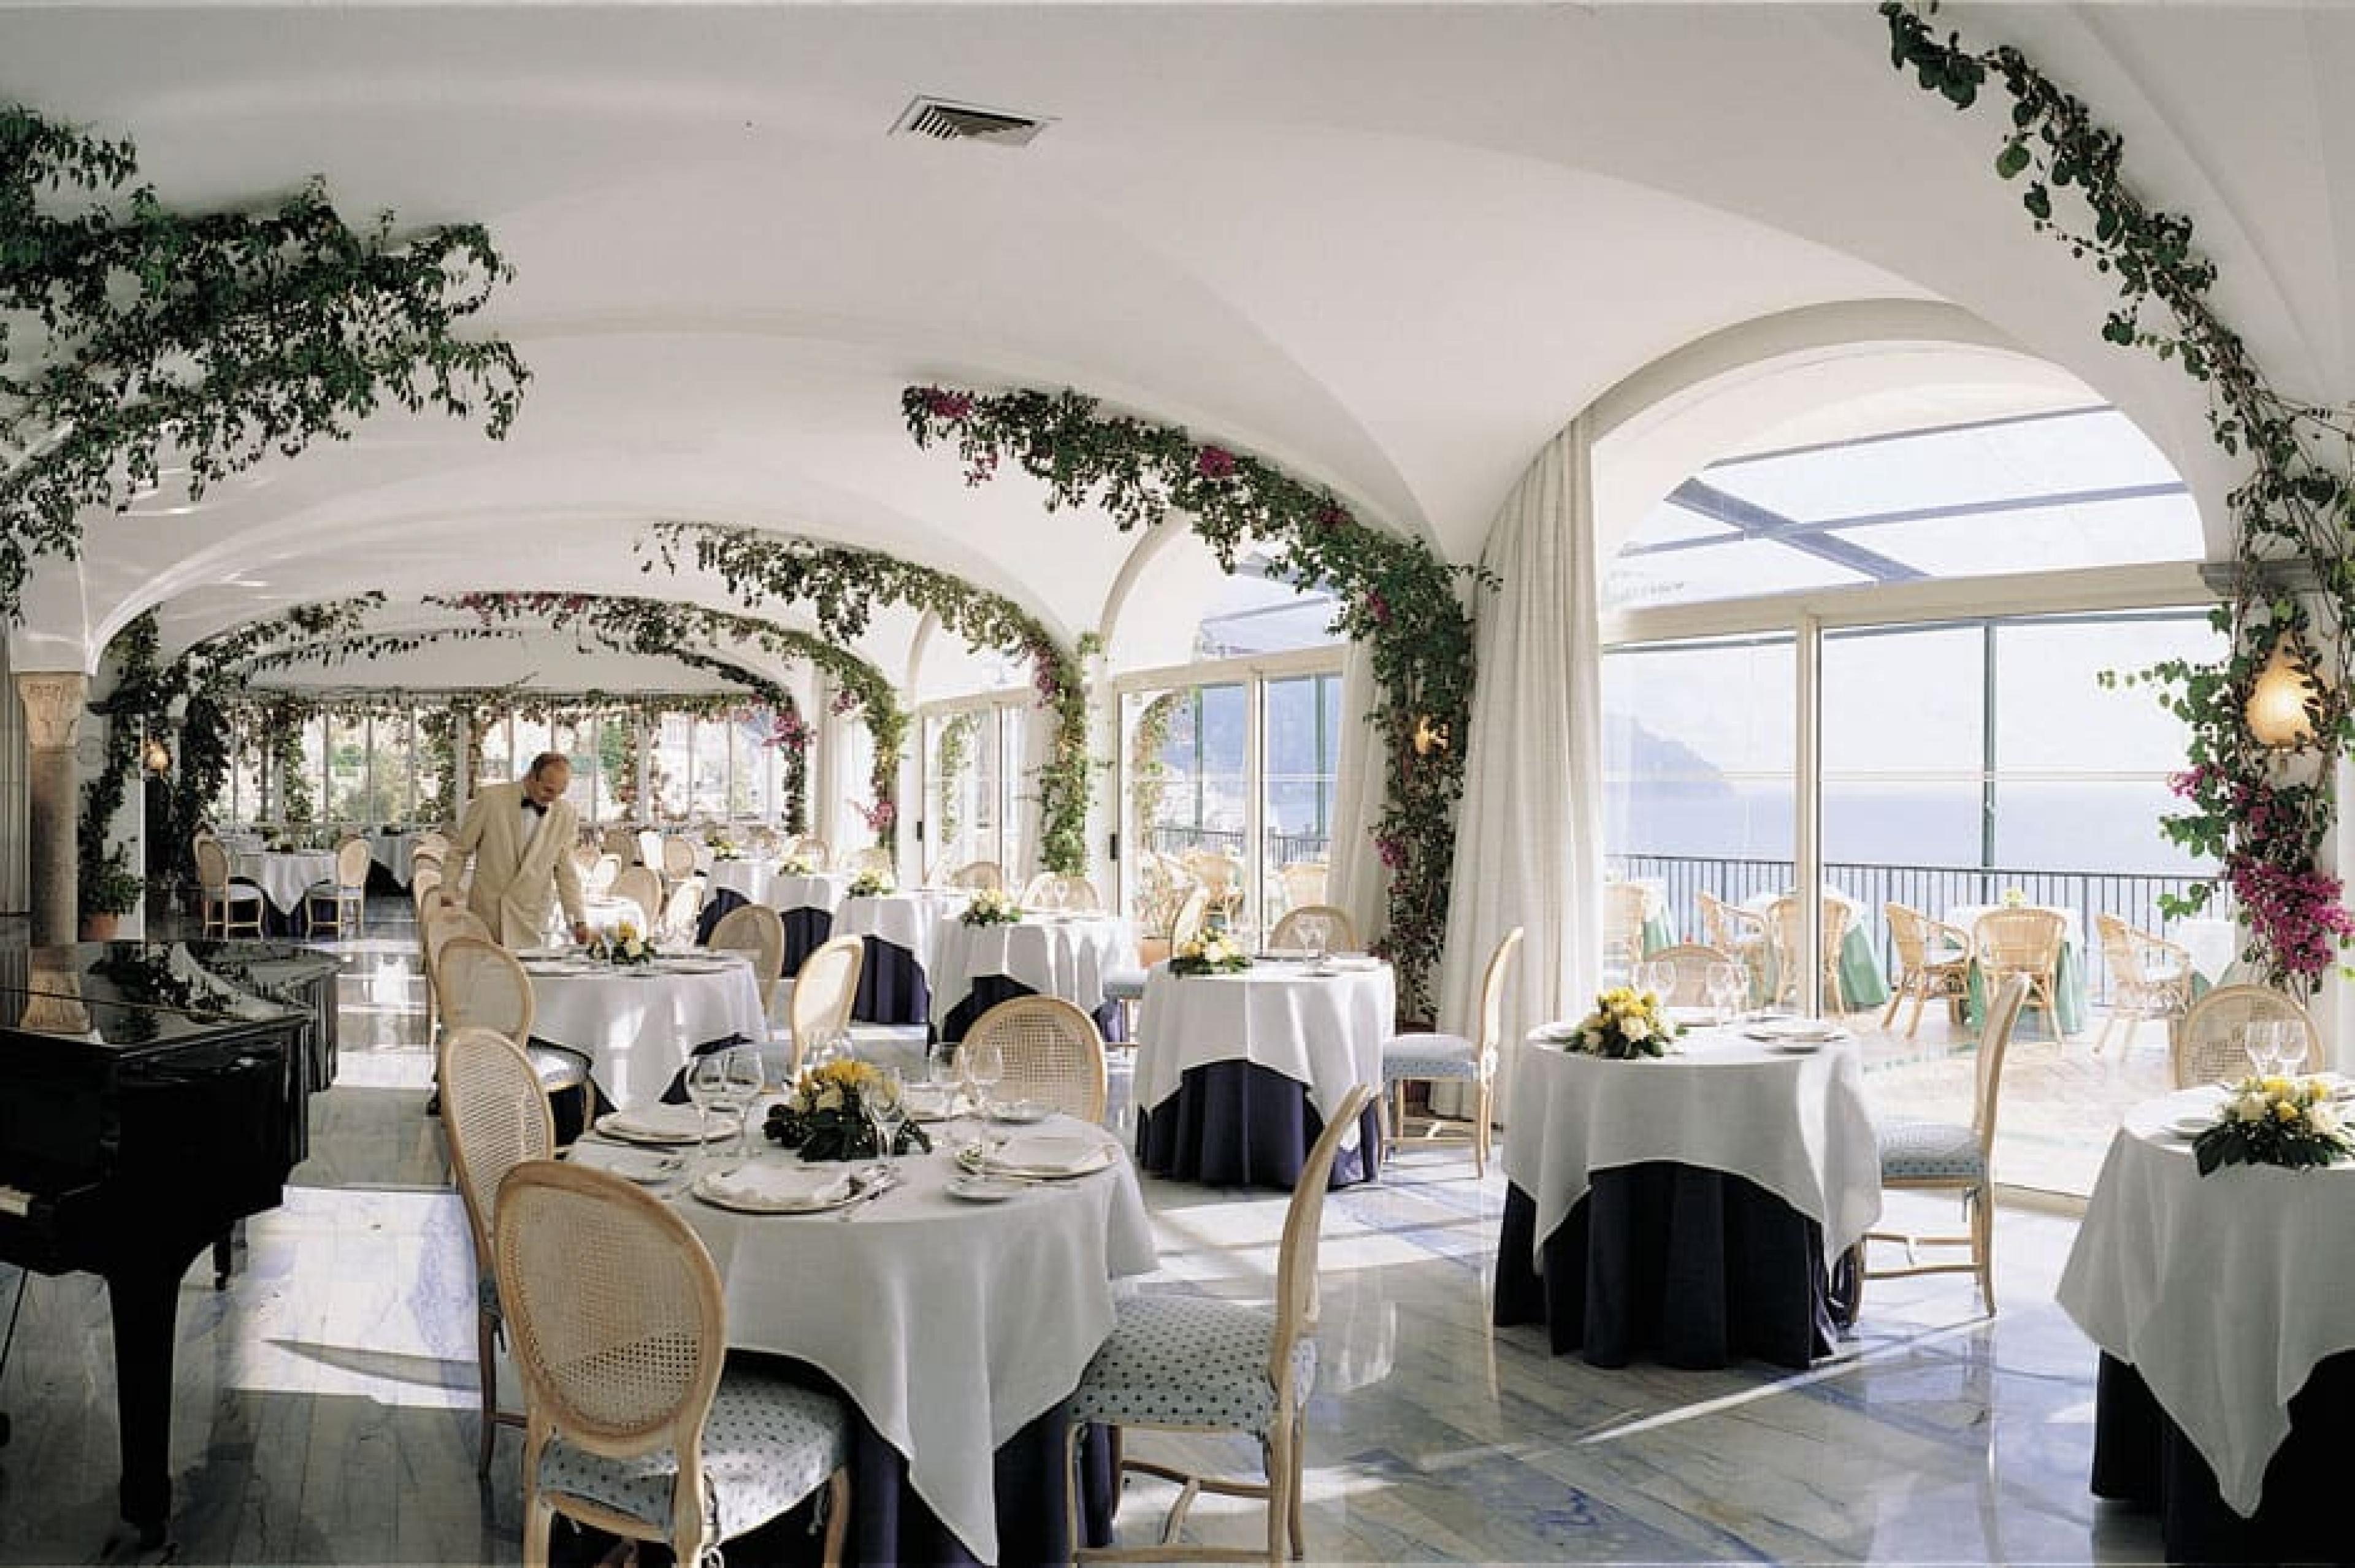 Restaurant at Hotel Santa Caterina, Amalfi Coast, Italy